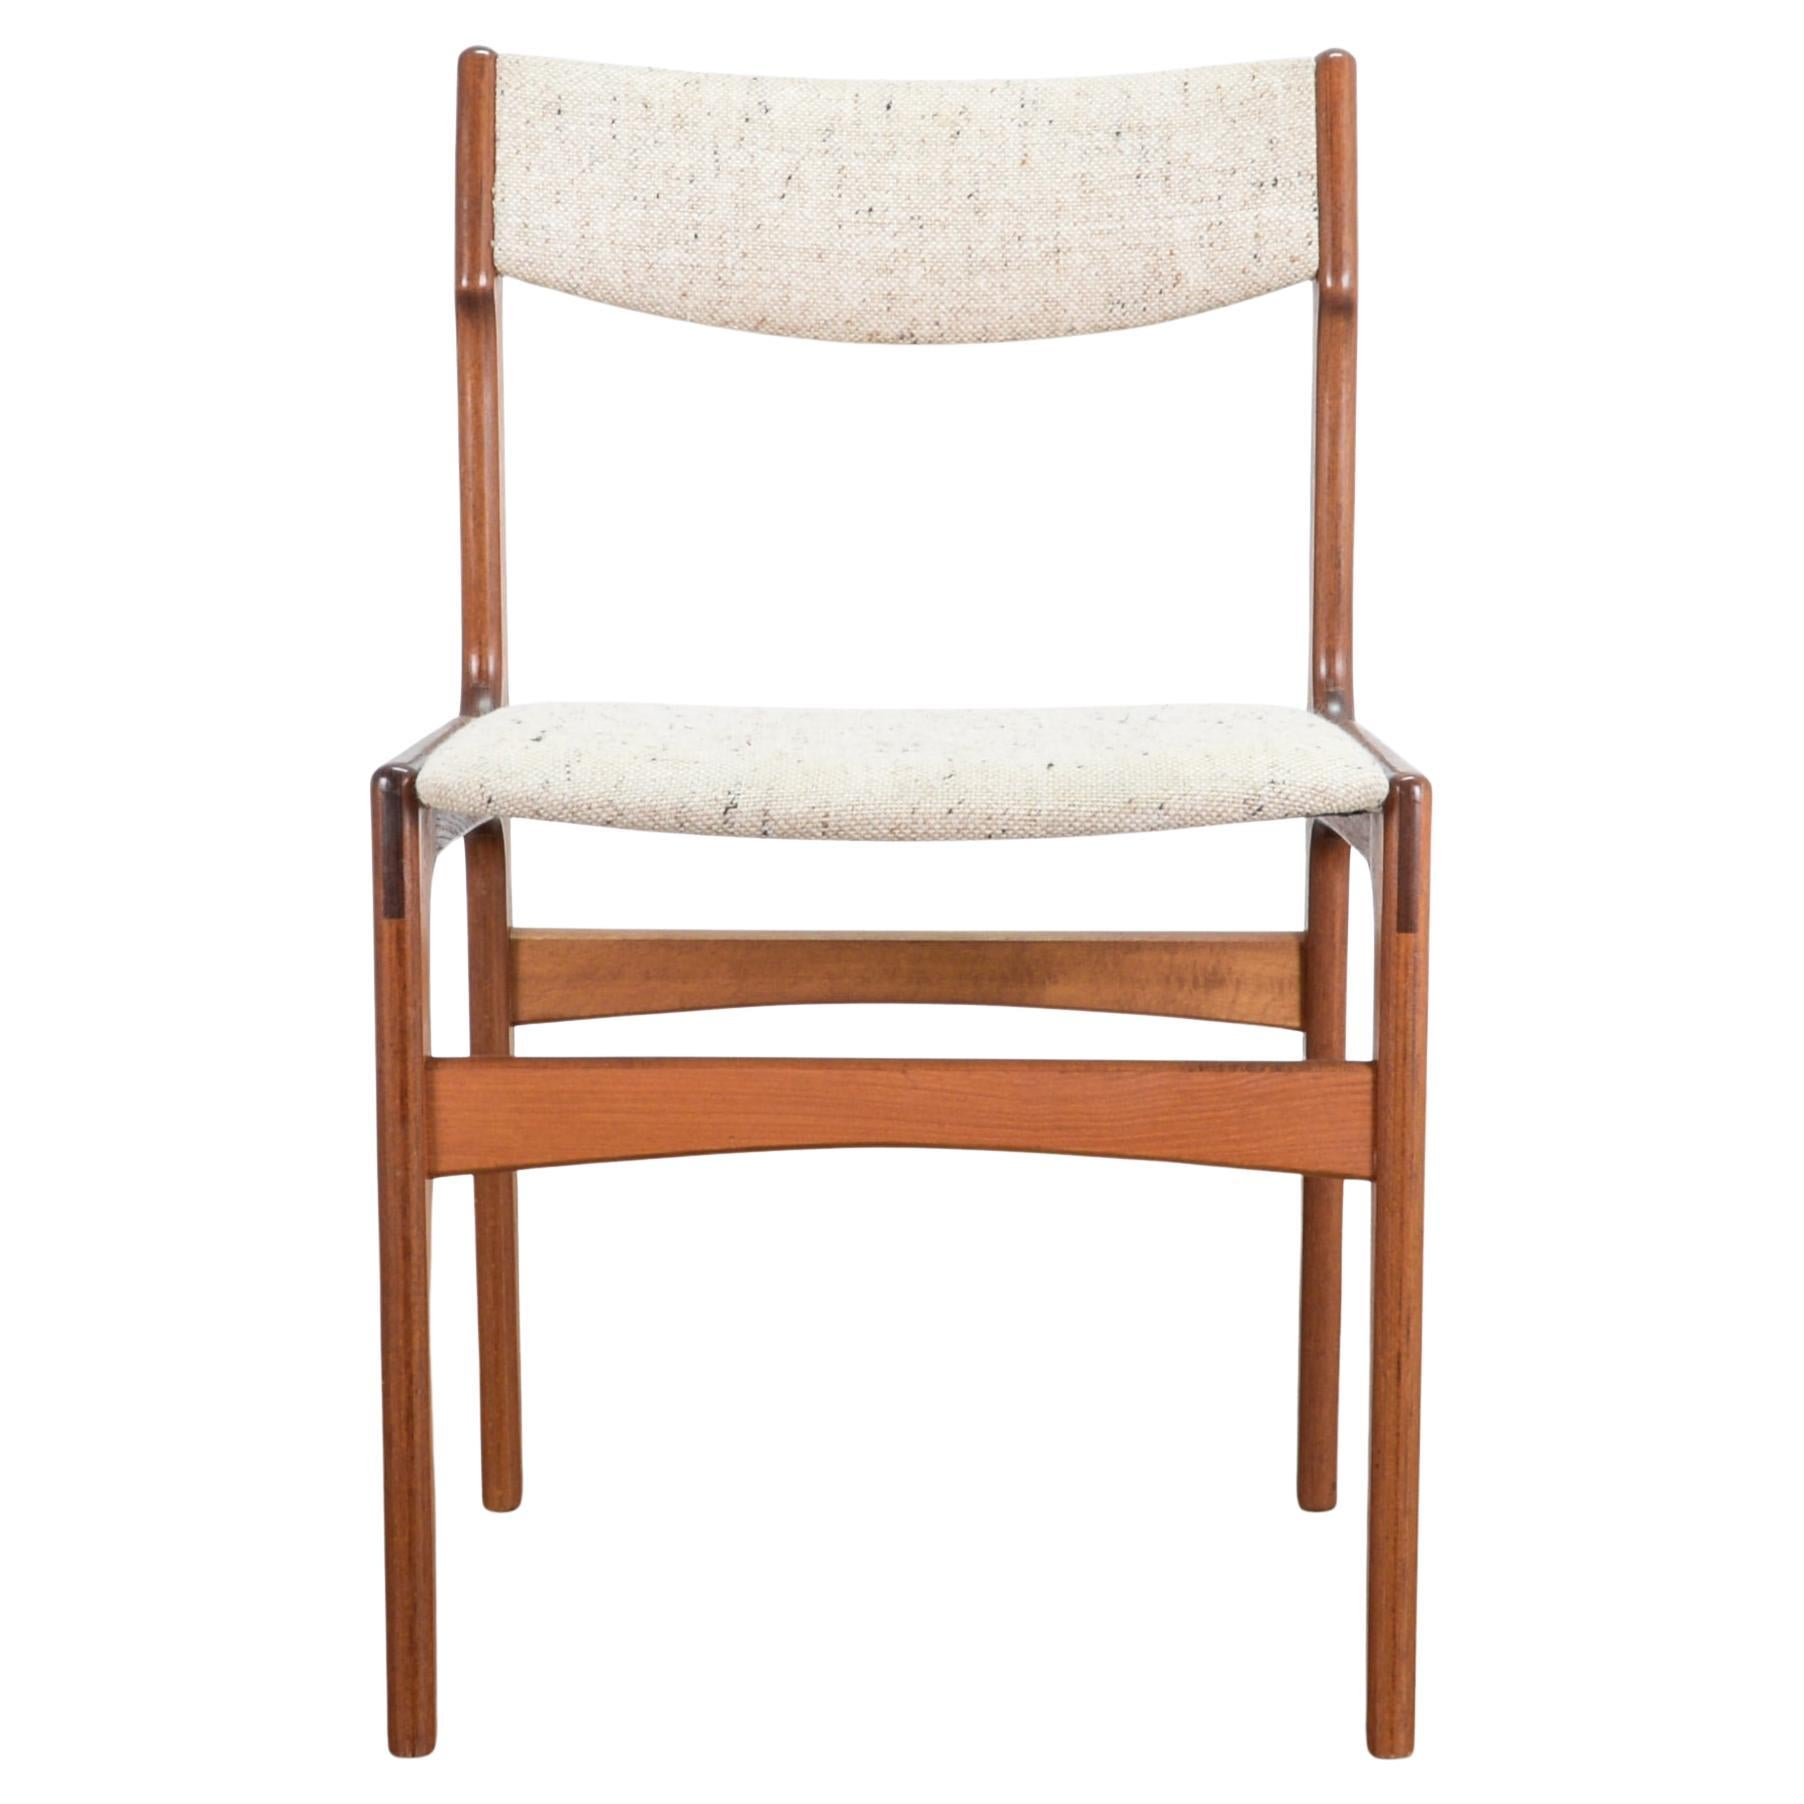 1960s Danish Modern Upholstered Teak Dining Chair